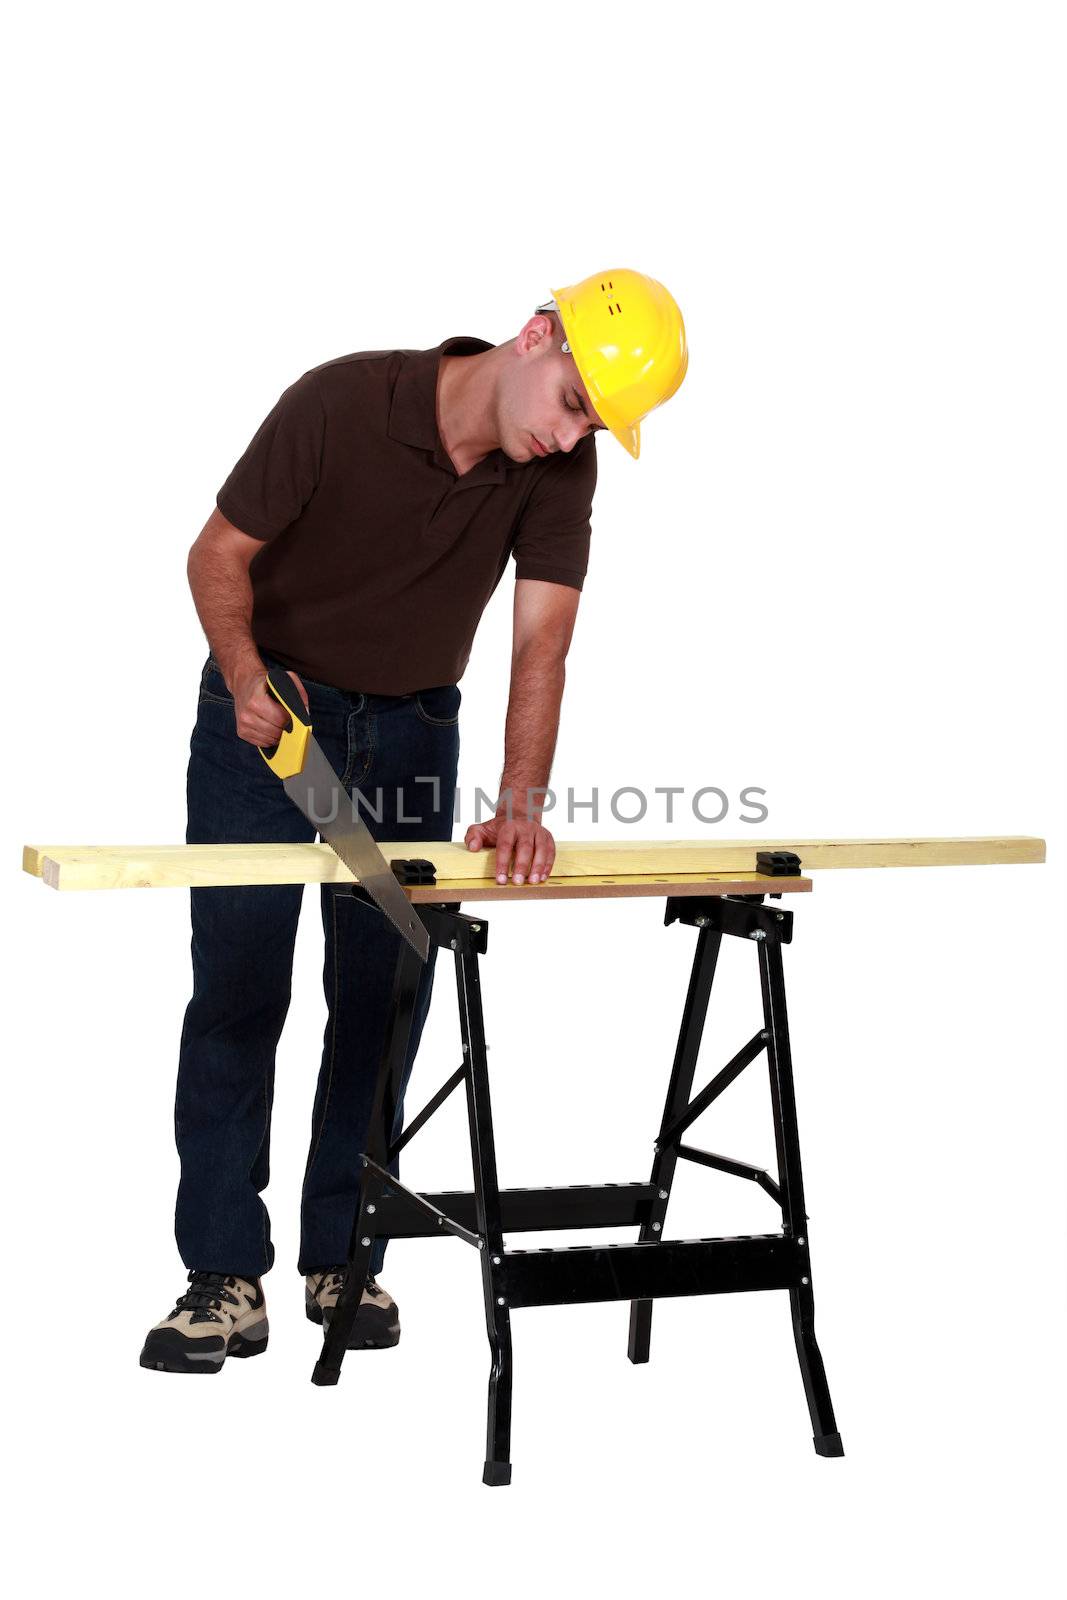 craftsman cutting a board